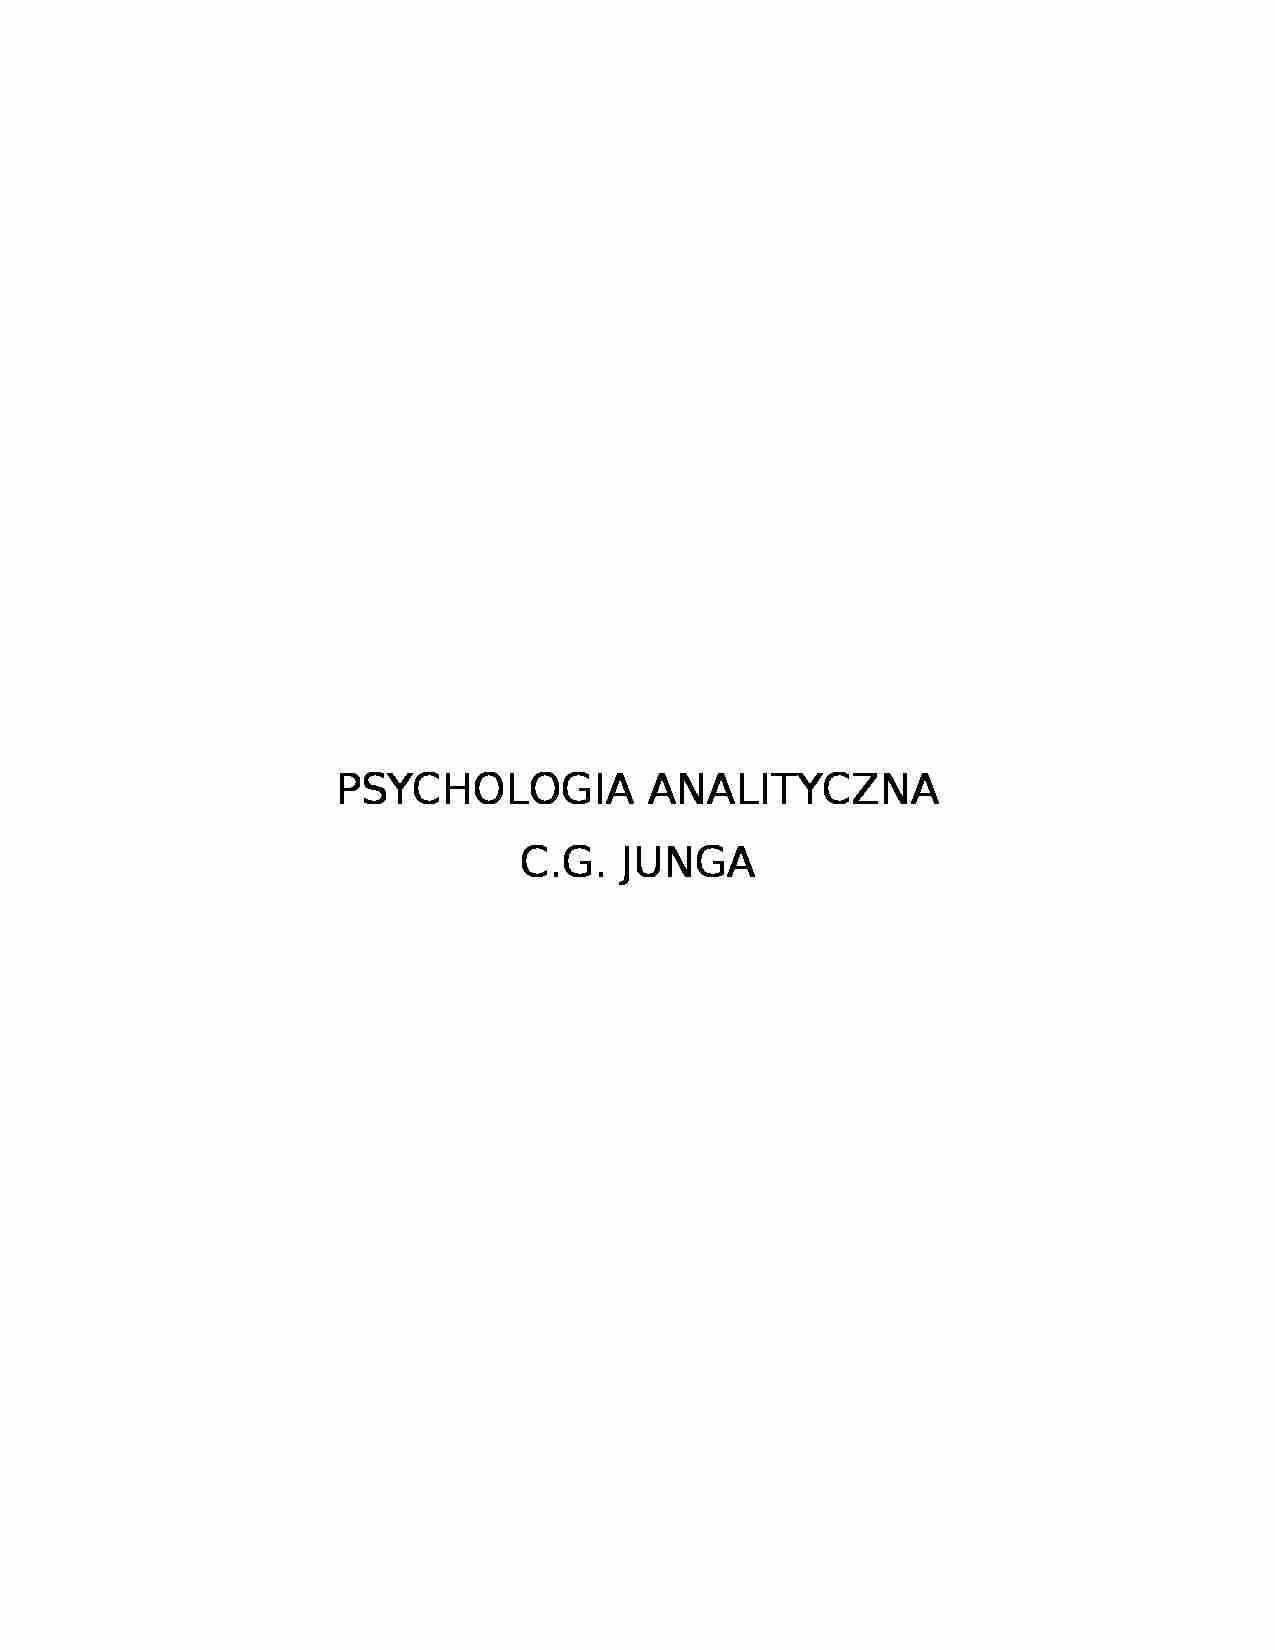 Psychologia analityczna -  Carl Gustav Jung  - strona 1